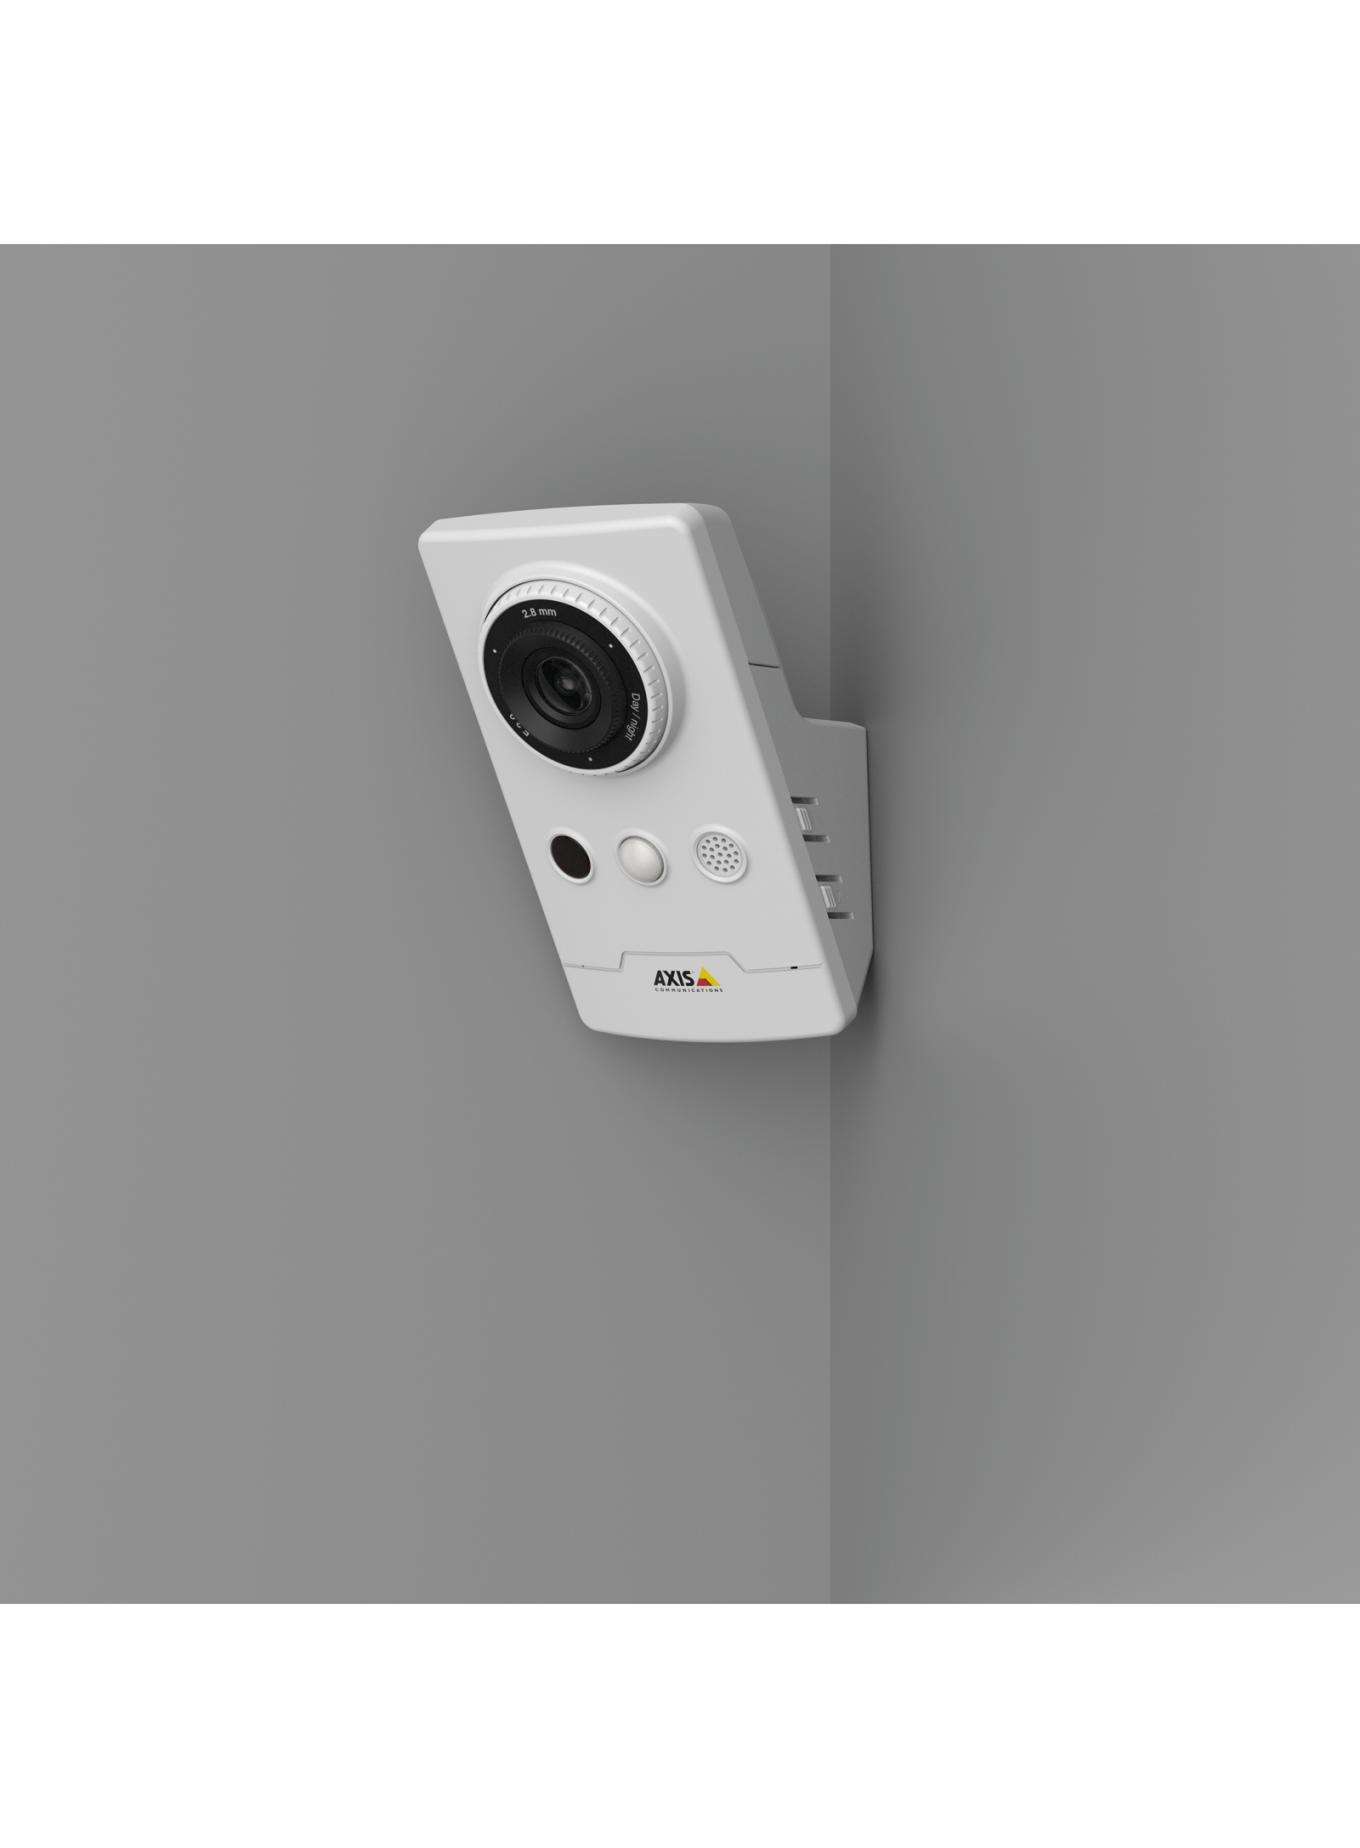 IP-камера AXIS M1065-LW, установленная на серой стене в углу